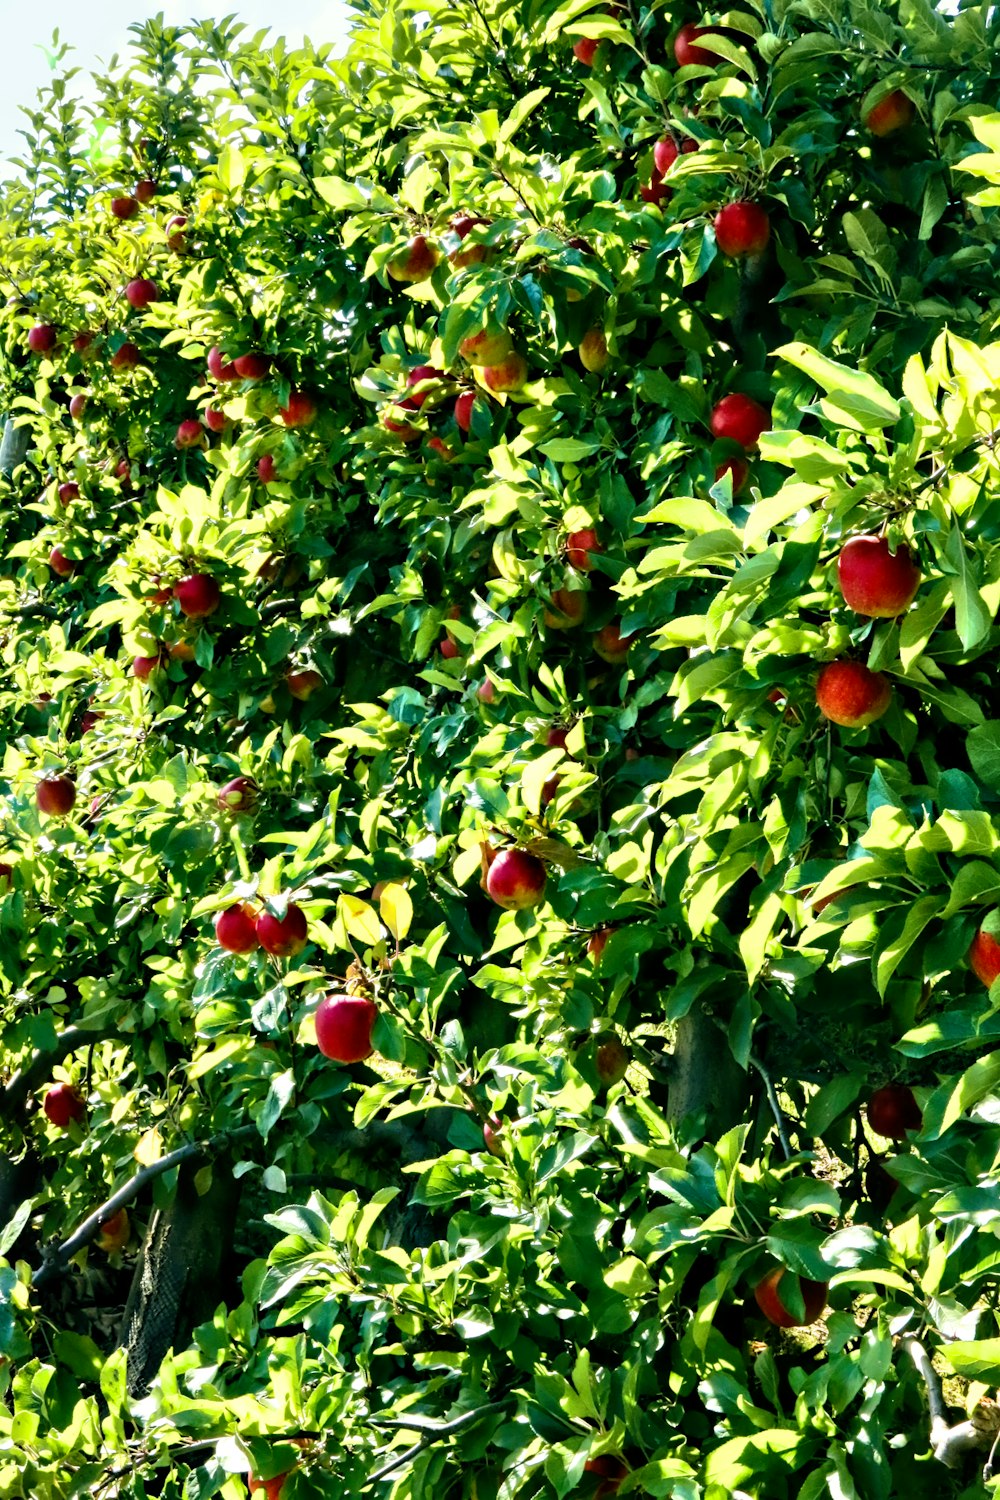 Fruits de pomme rouge pendant la journée